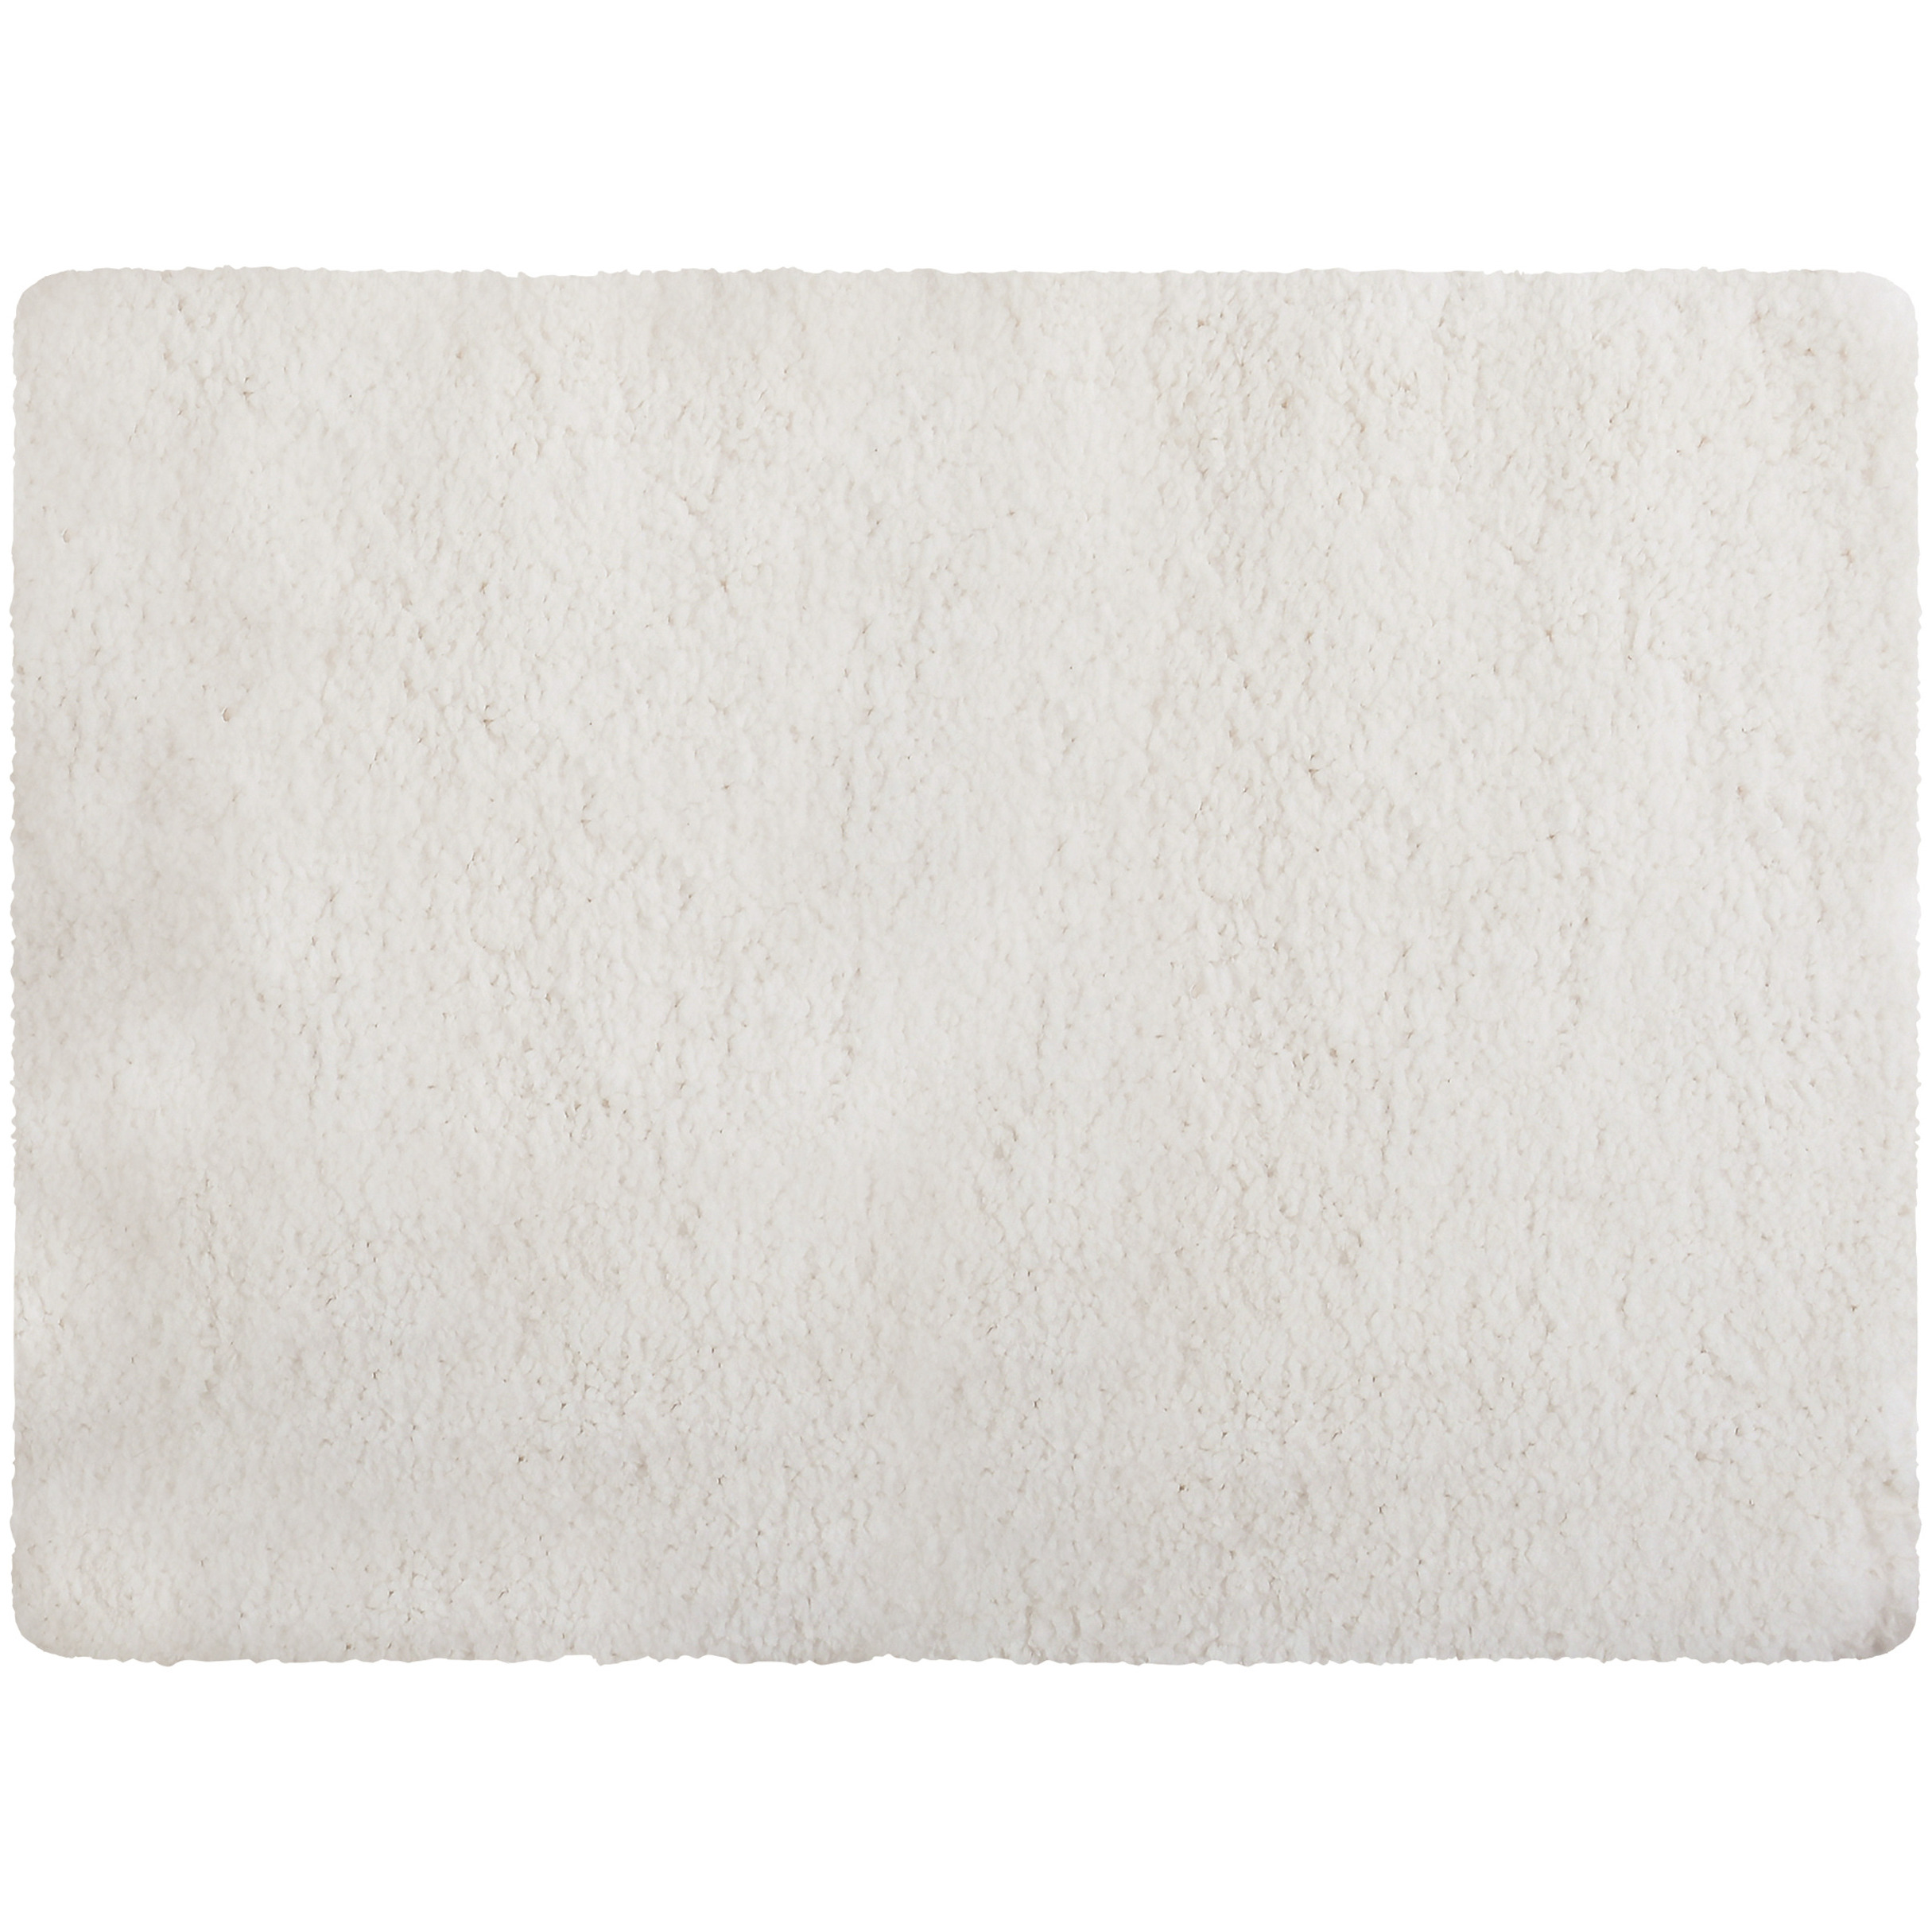 Badkamerkleedje-badmat tapijt voor op de vloer wit 50 x 70 cm langharig